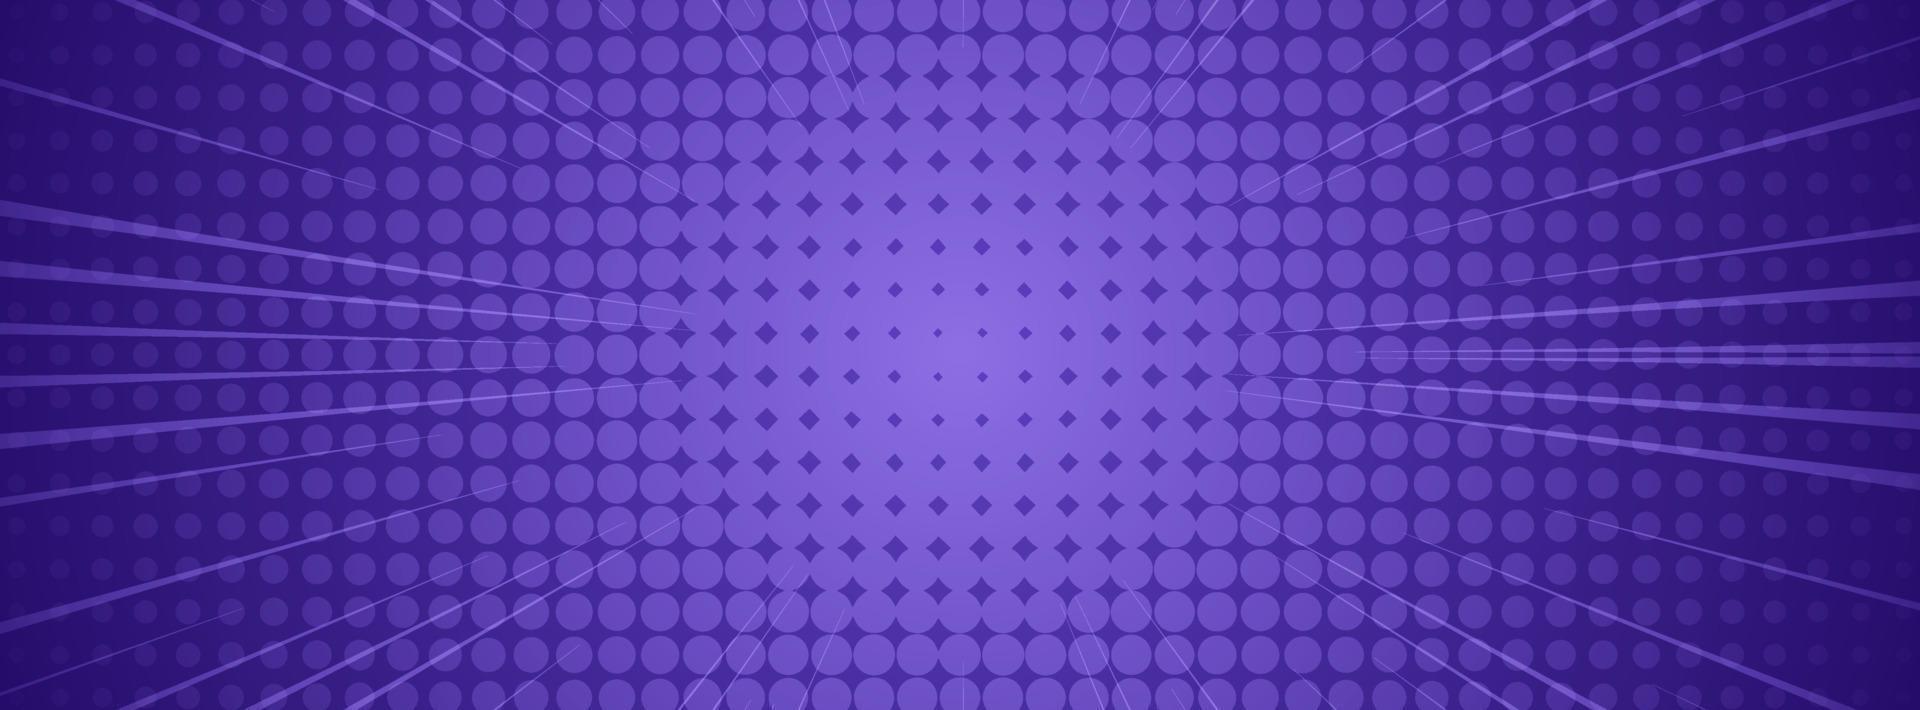 Banner-Hintergrund. Vollfarbe, Halbtoneffekt mit violetter Abstufung vektor